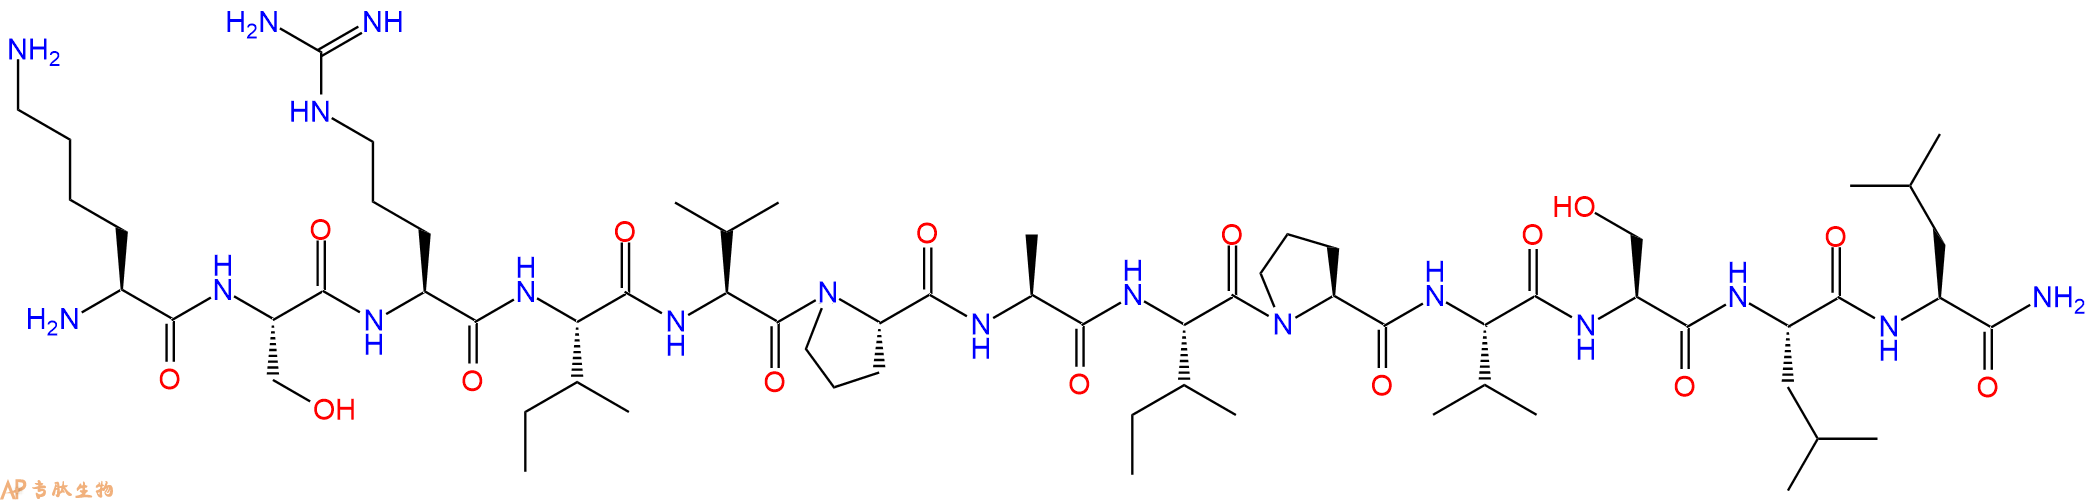 专肽生物产品Anti-Infective Peptide s940291-10-1